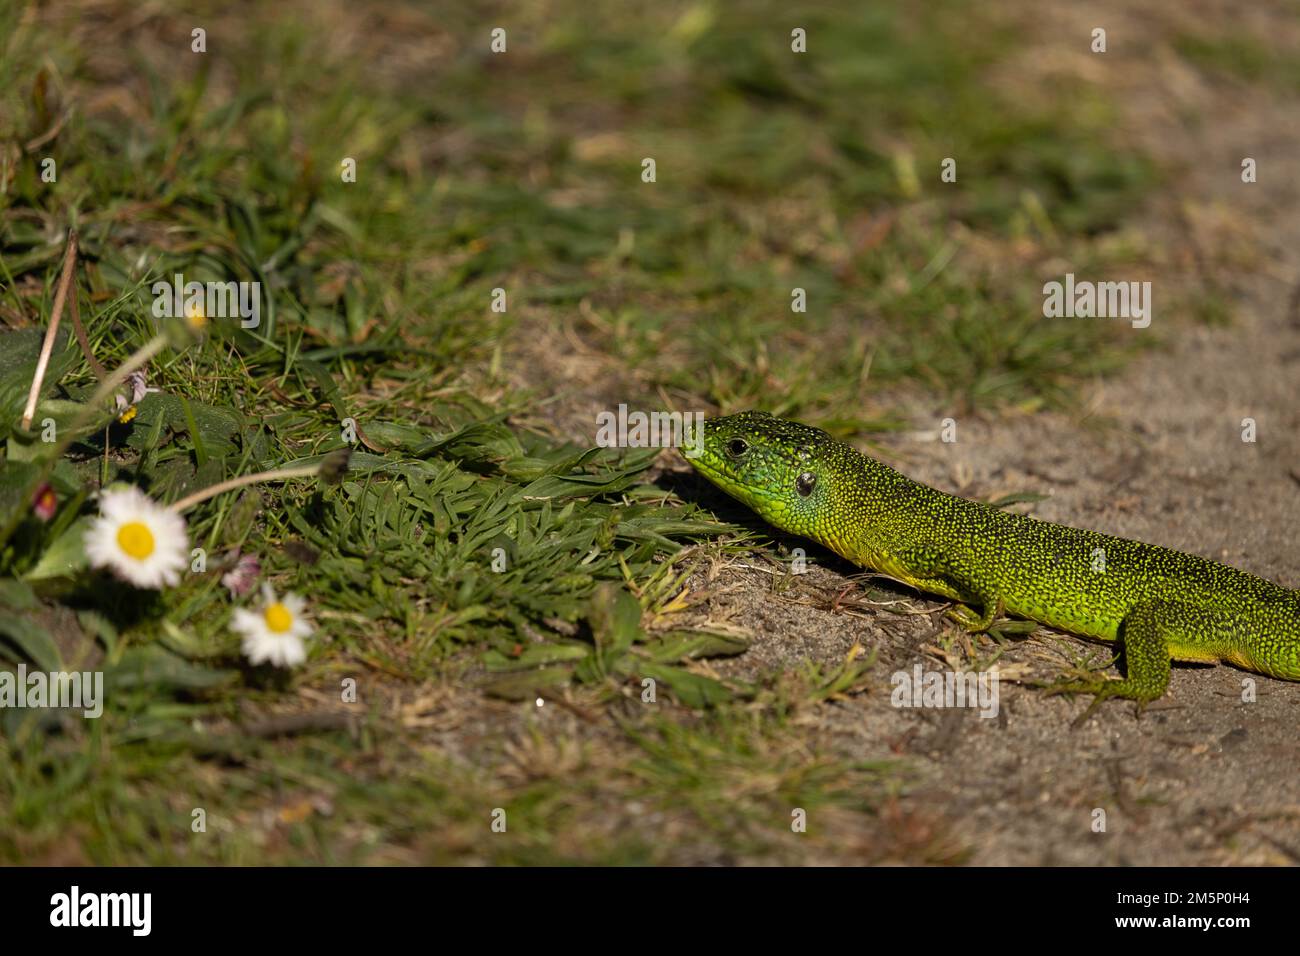 a green lizard walking in grass next to a flower Stock Photo